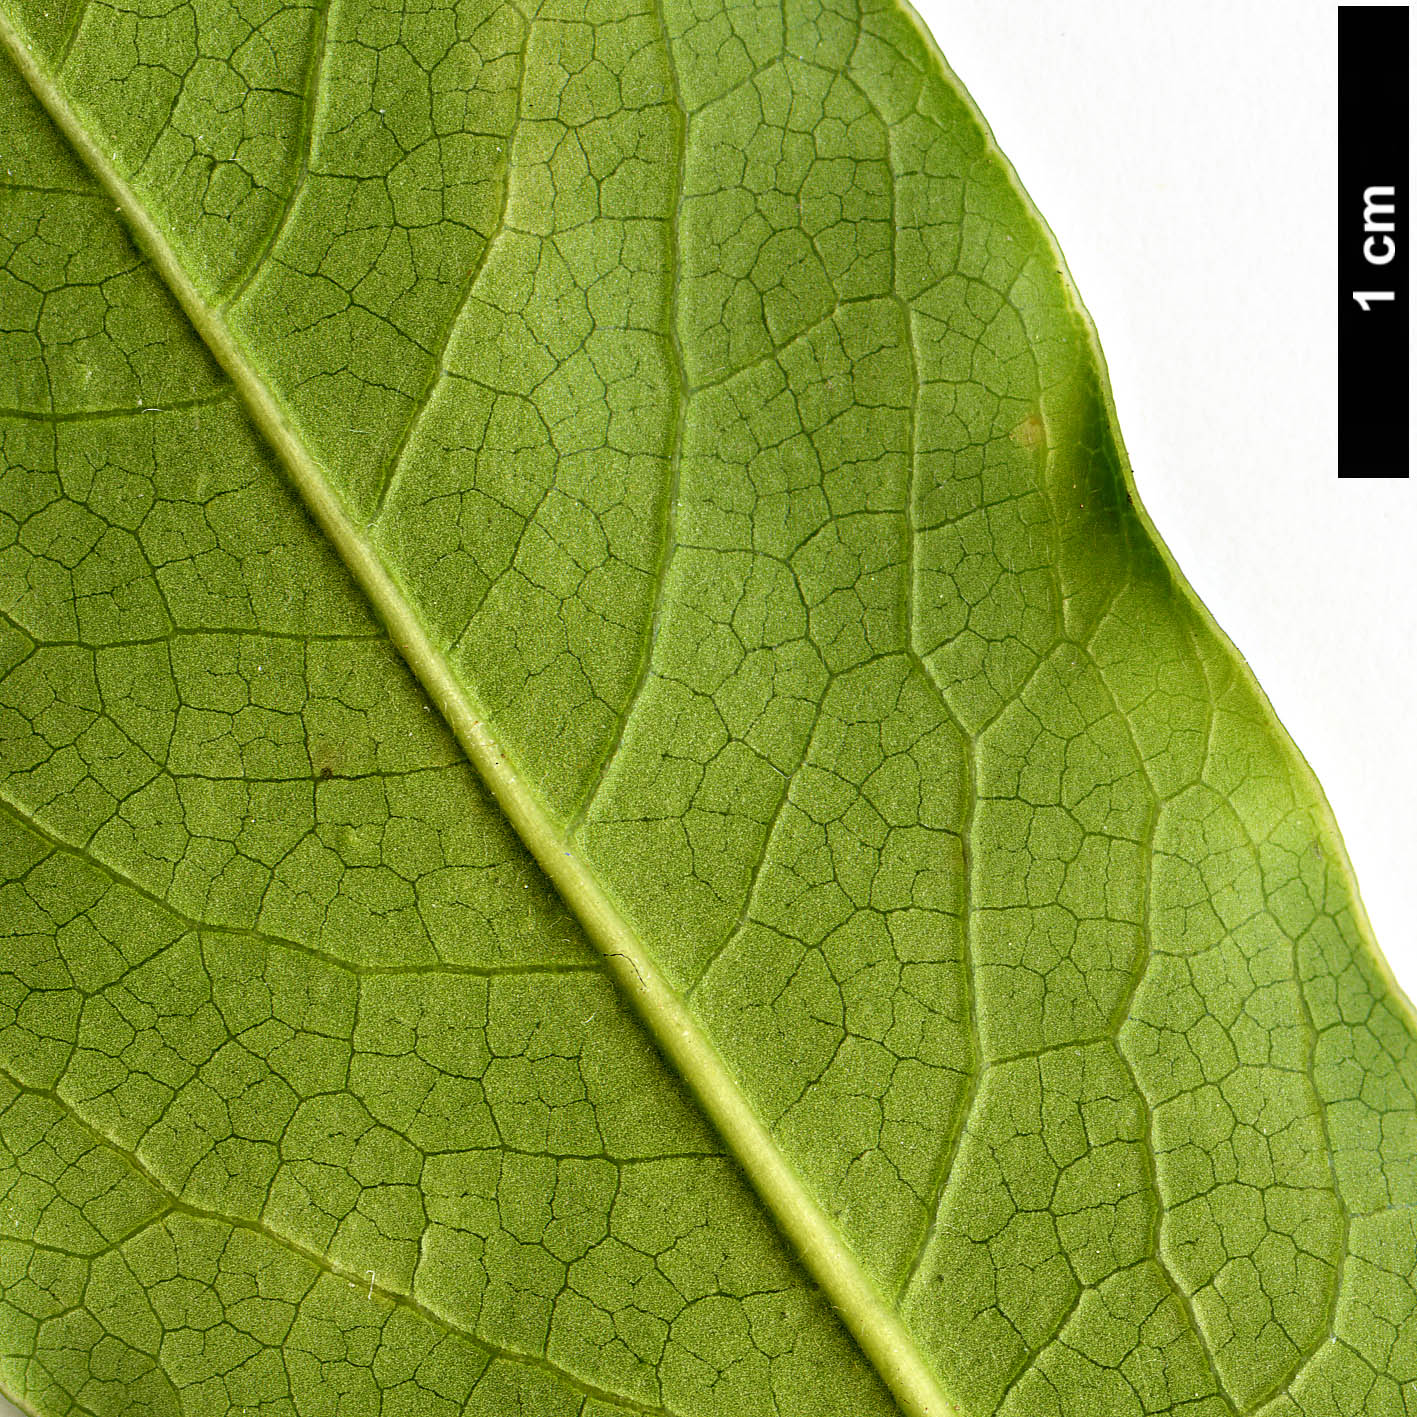 High resolution image: Family: Pittosporaceae - Genus: Pittosporum - Taxon: procerum